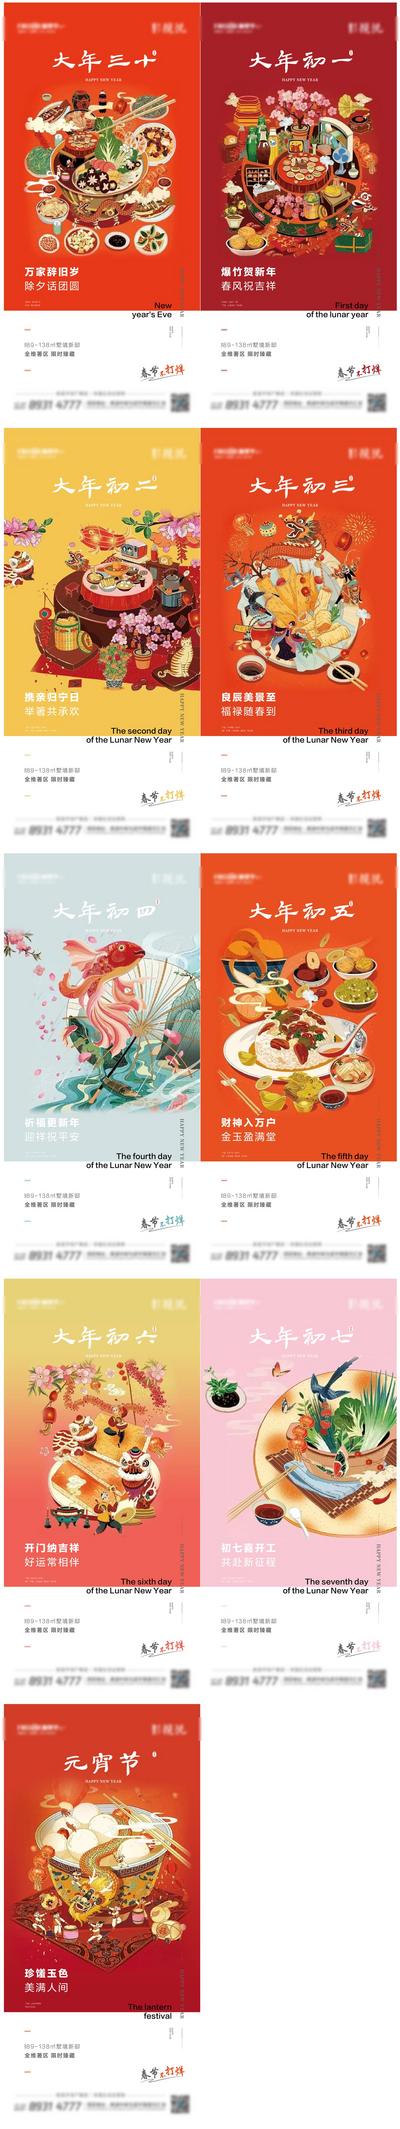 南门网 海报 中国传统节日 房地产 插画 习俗 系列 除夕 元宵节